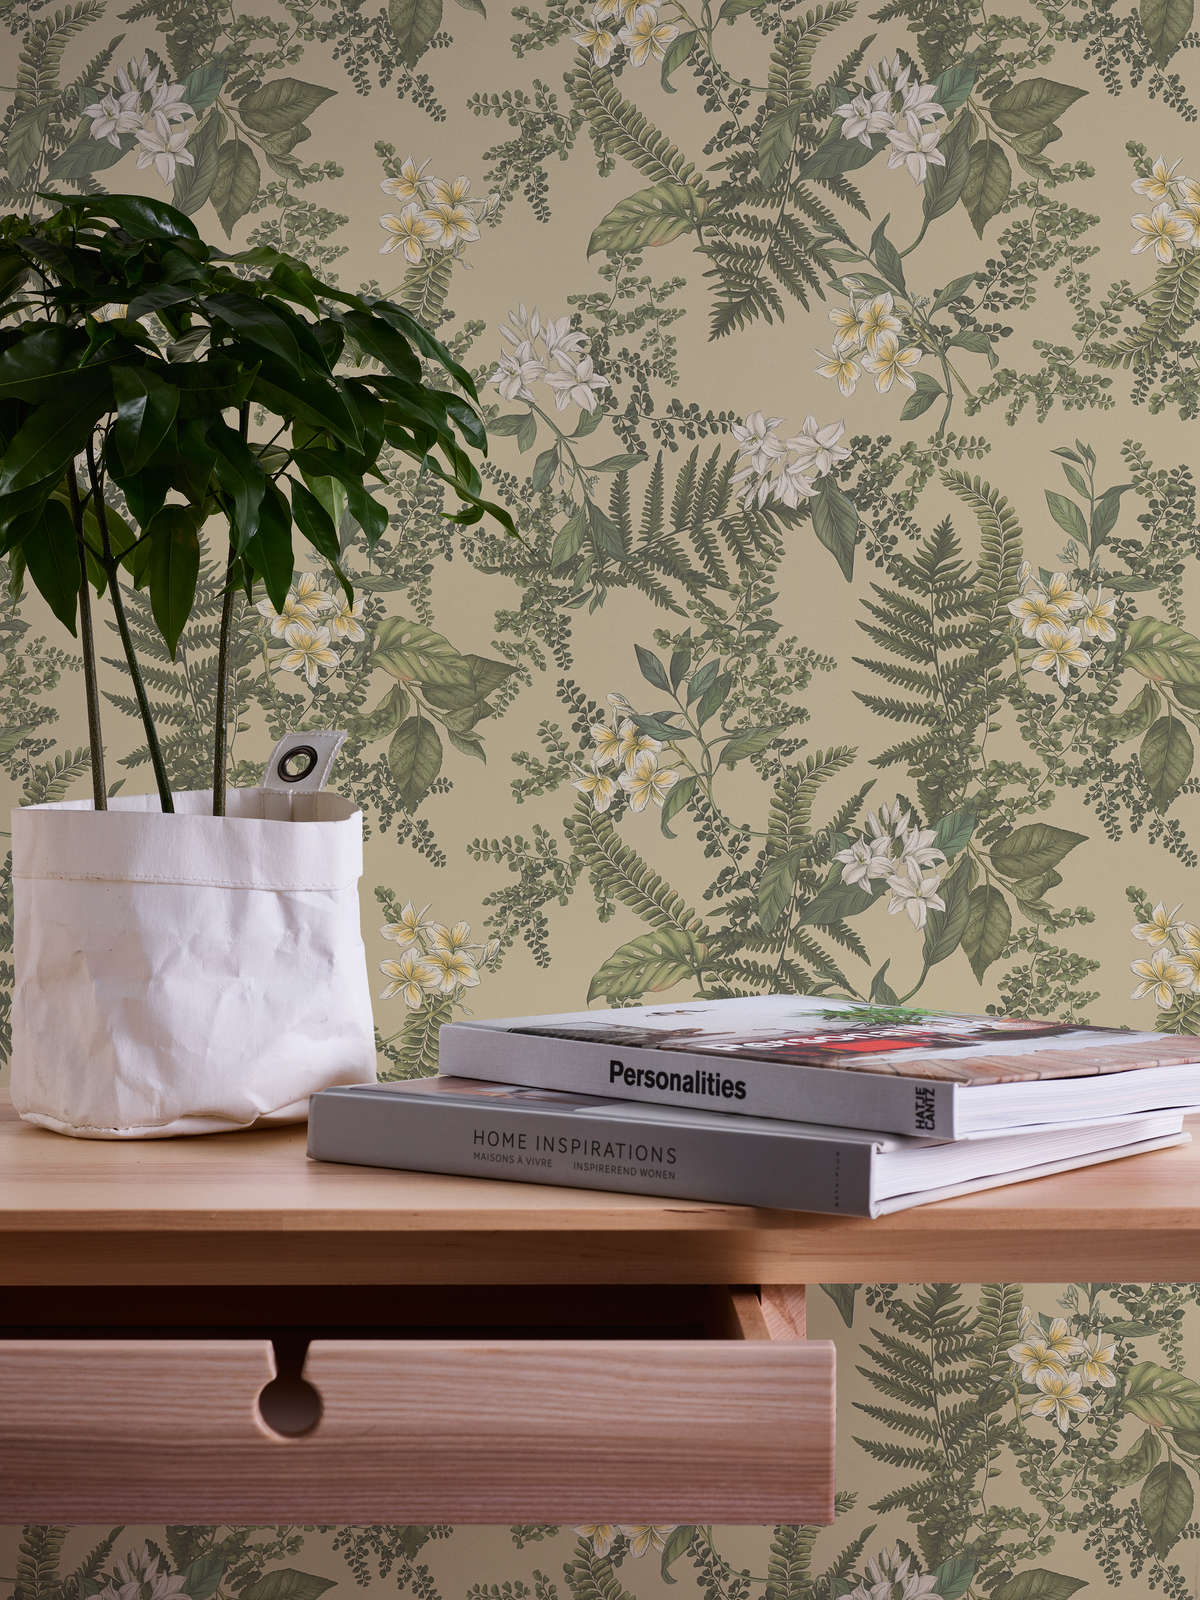             papier peint en papier style floral avec fleurs & herbes structuré mat - vert, vert foncé, blanc
        